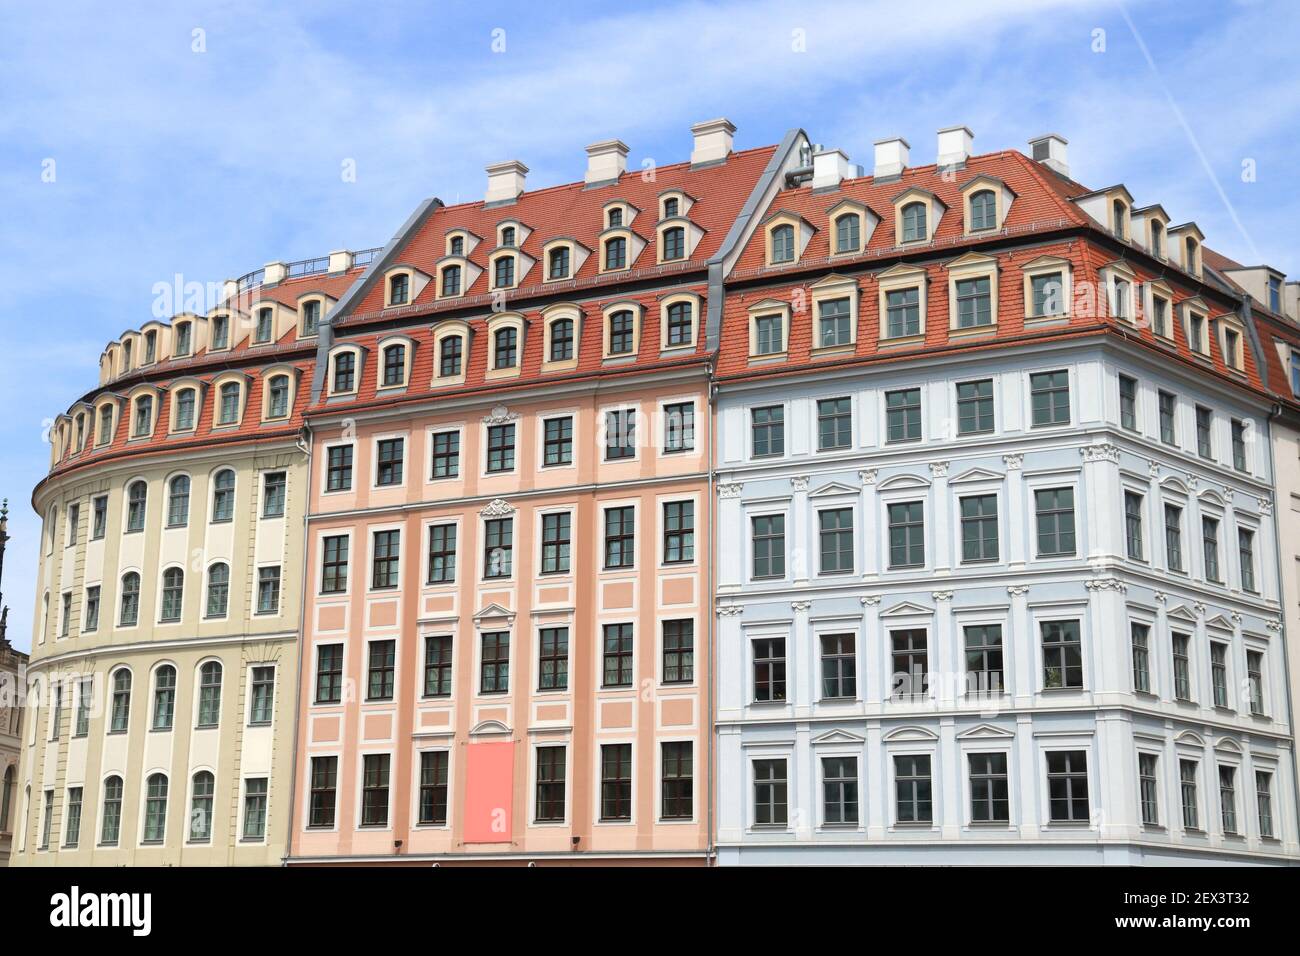 Ciudad de Dresde en Alemania (Estado de Sachsen). Casco antiguo (Altstadt) colorida arquitectura en la plaza Neumarkt. Foto de stock